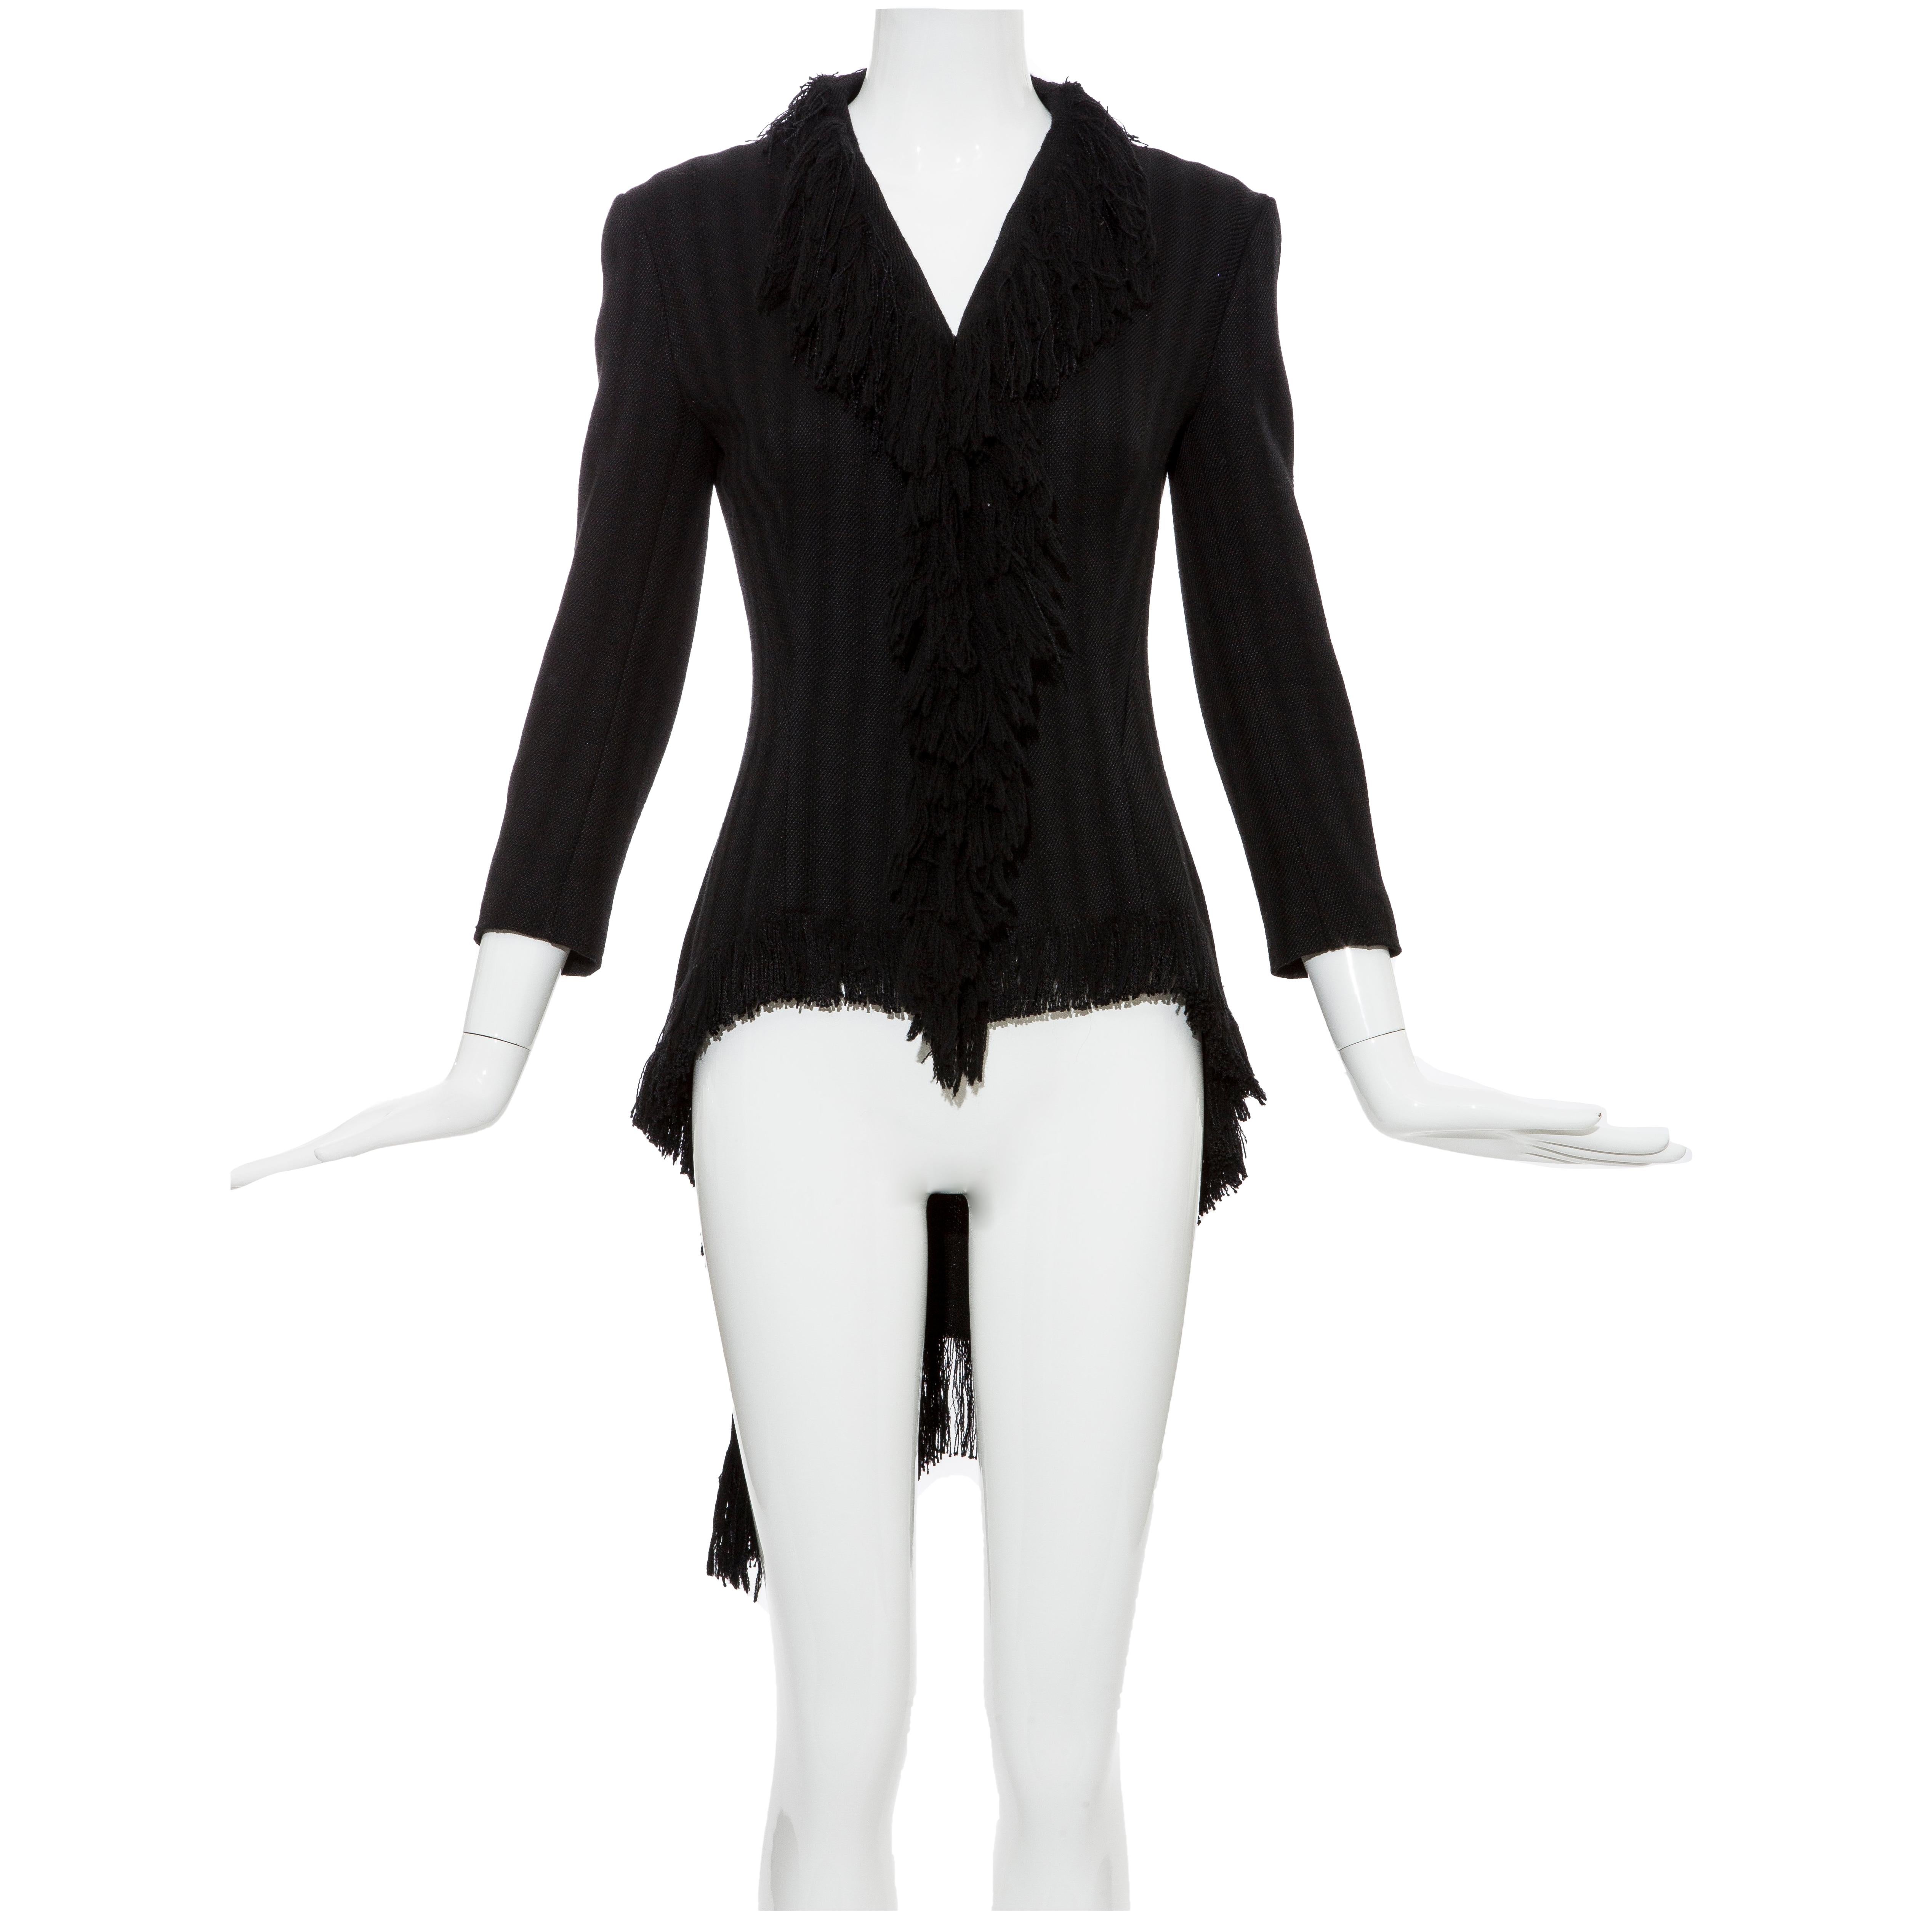 Yohji Yamamoto Black Silk Wool Tweed Cutaway Jacket With Fringe Trim, Fall 2013 For Sale